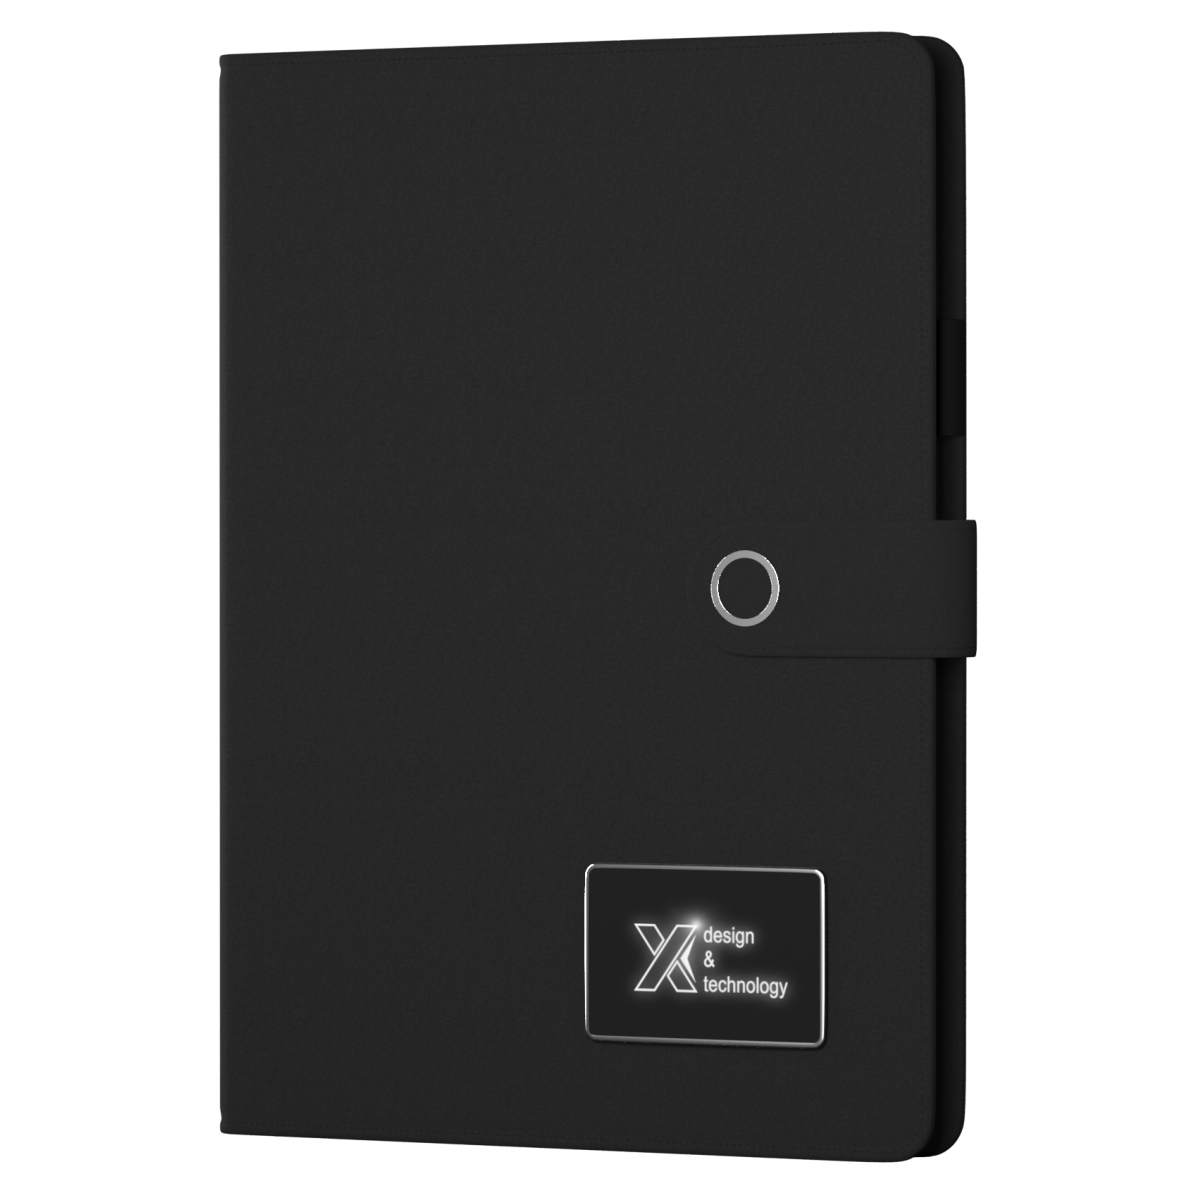 O17 - Powerbank notebook A4